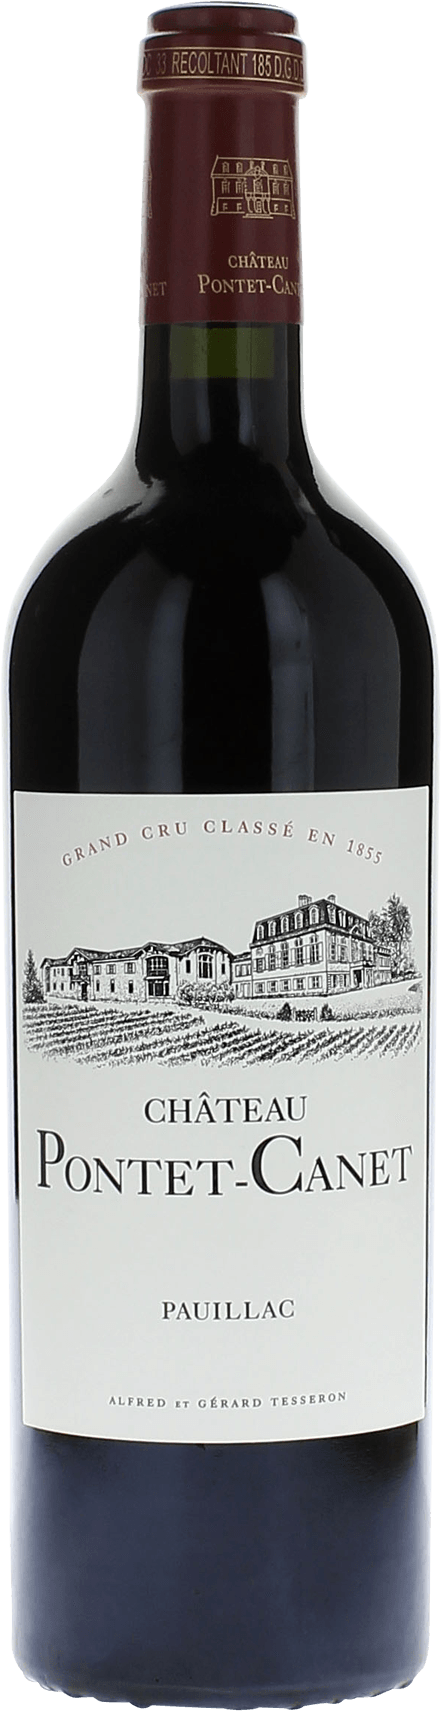 Pontet canet 2000 5me Grand cru class Pauillac, Bordeaux rouge